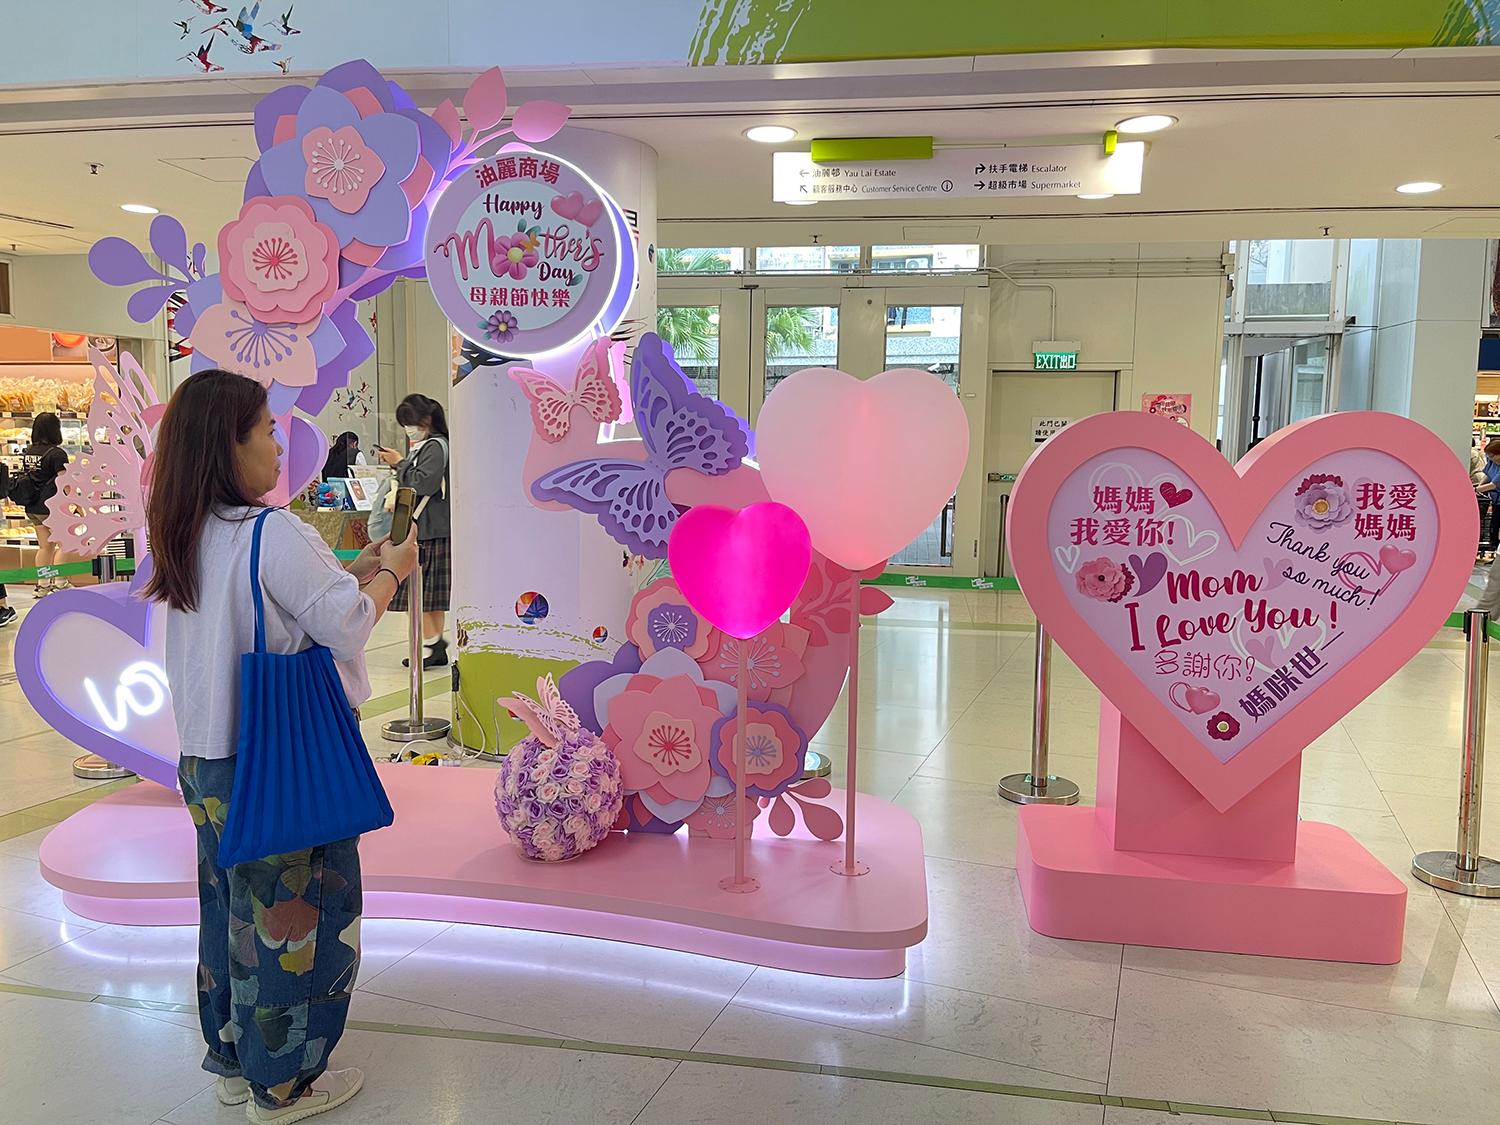 香港房屋委员会（房委会）于母亲节期间在辖下多个商场举办推广活动，以歌颂母爱和增加商场人流。图示房委会油塘油丽商场的母亲节摆设。